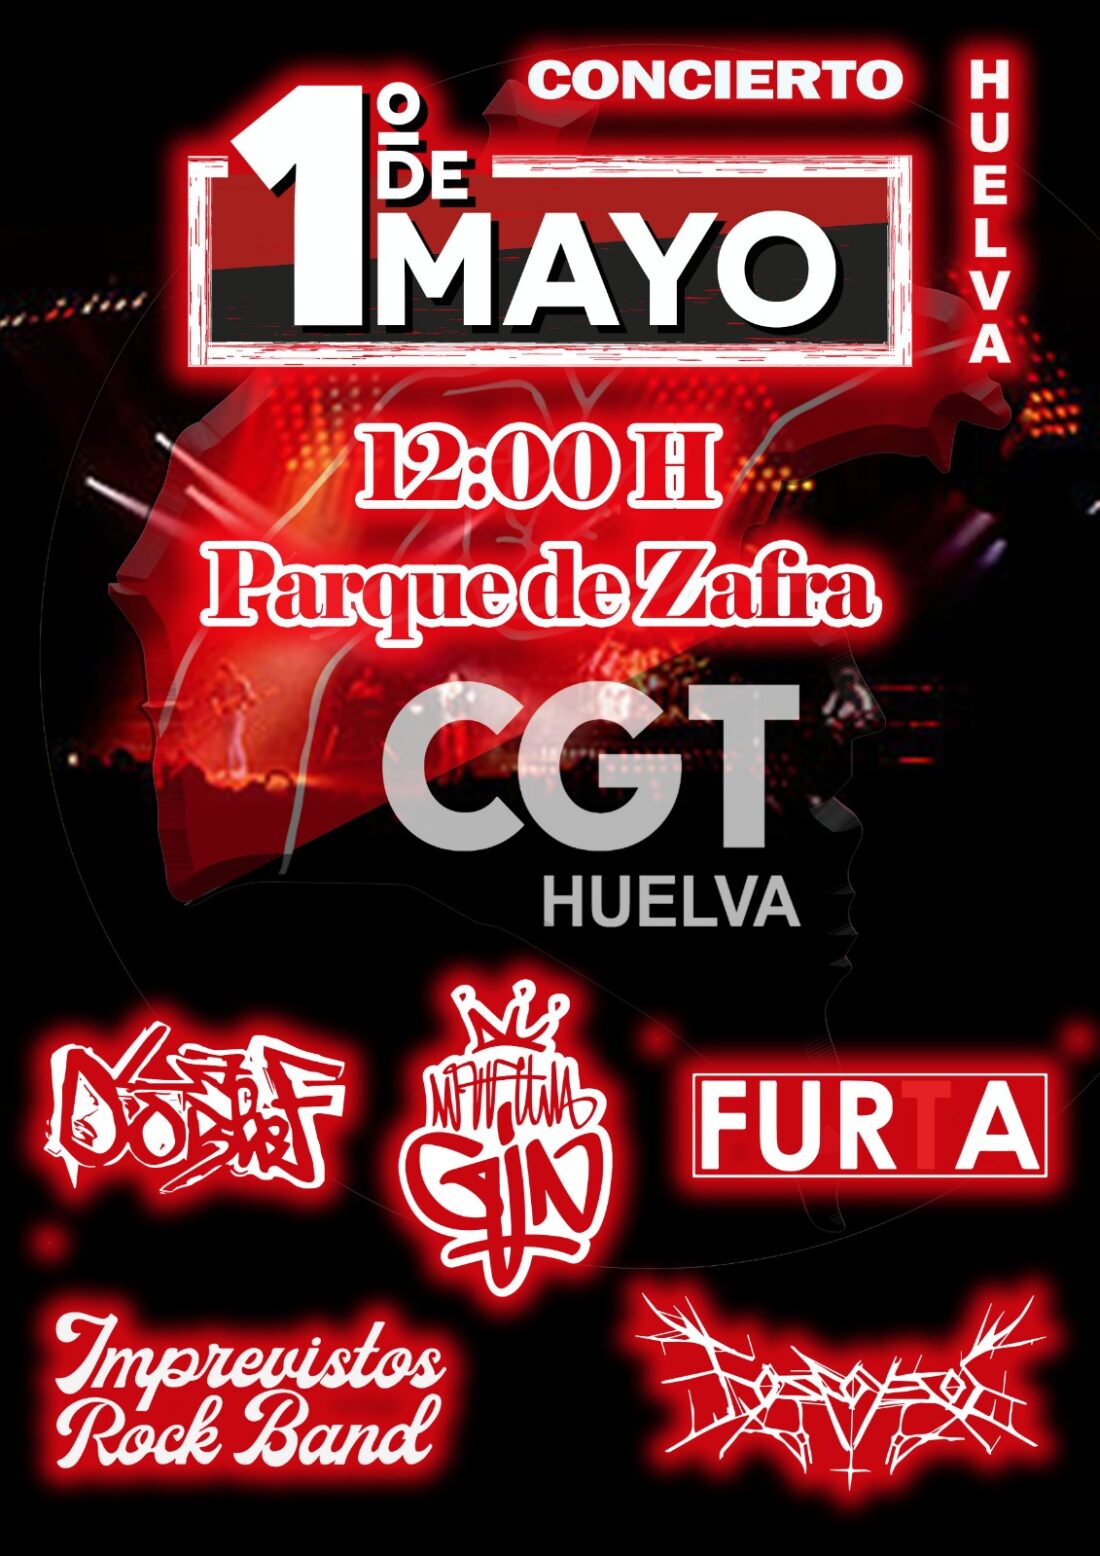 CGT Huelva organizará el 1 de Mayo un concierto para celebrar el Día Internacional de los Trabajadores y Trabajadoras